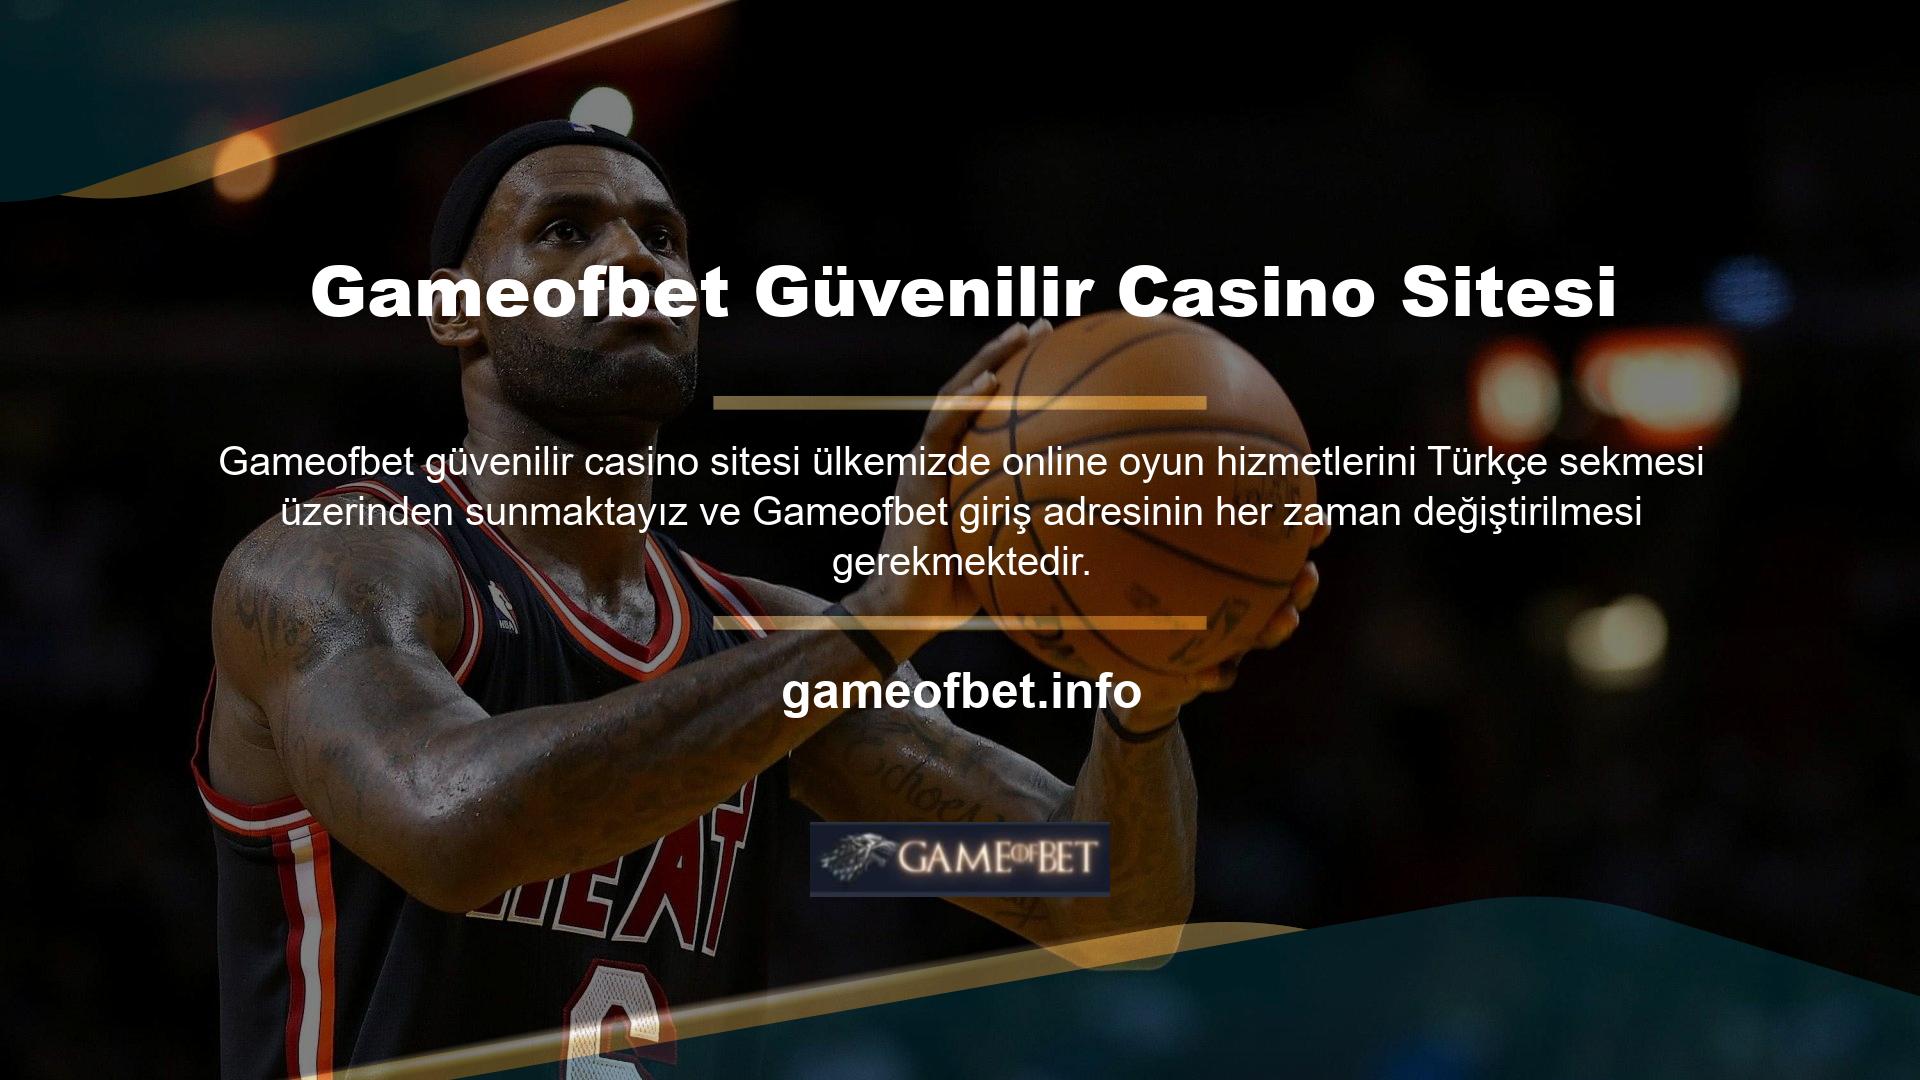 Gameofbet kullanıcıları yeni giriş adresleri hakkında bilgi almak için siteyi ziyaret edebilirler